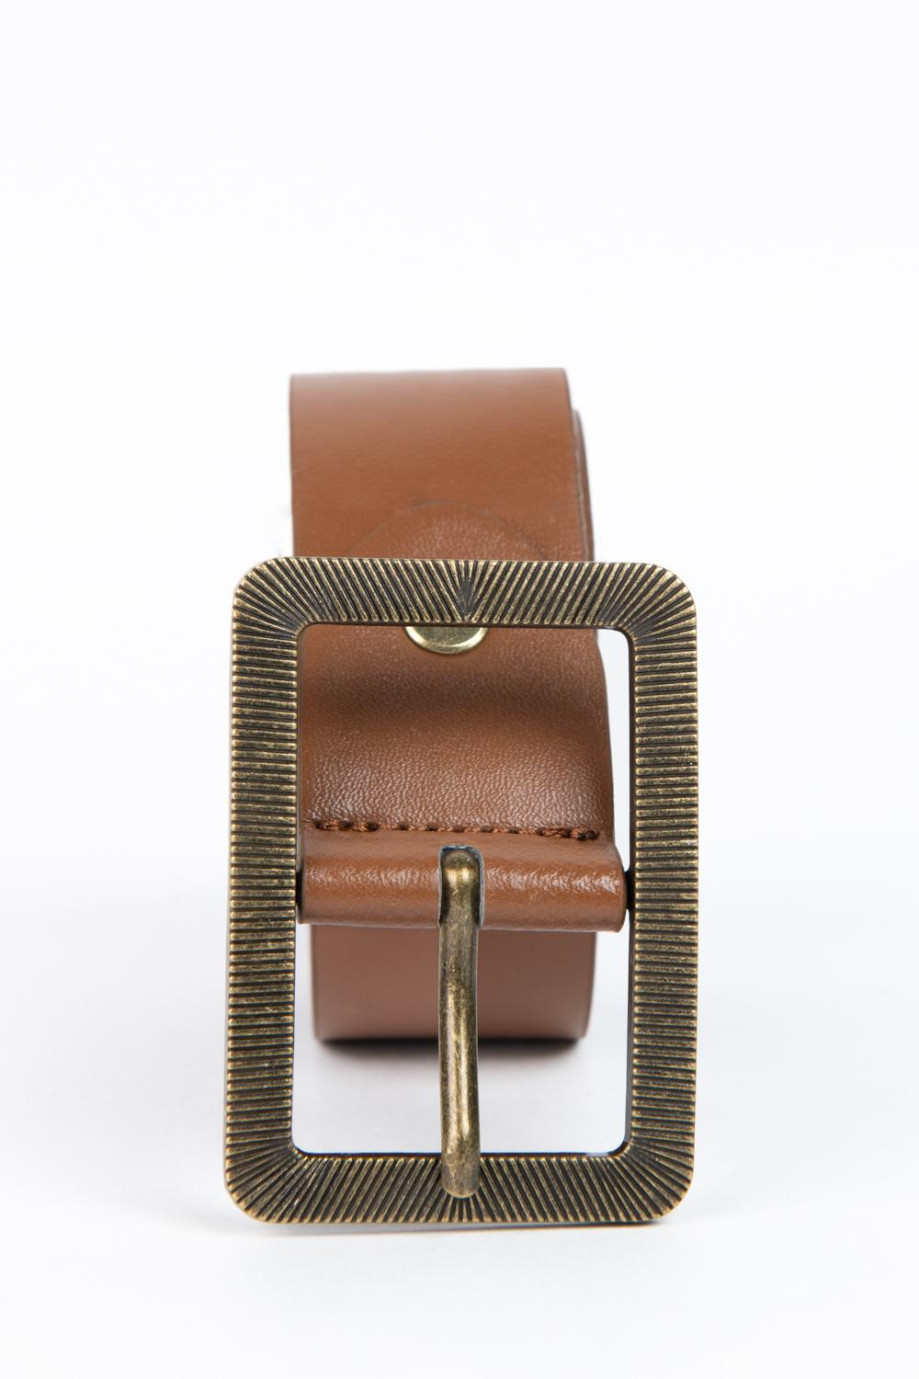 Cinturón café oscuro con hebilla cuadrada con diseños en relieve